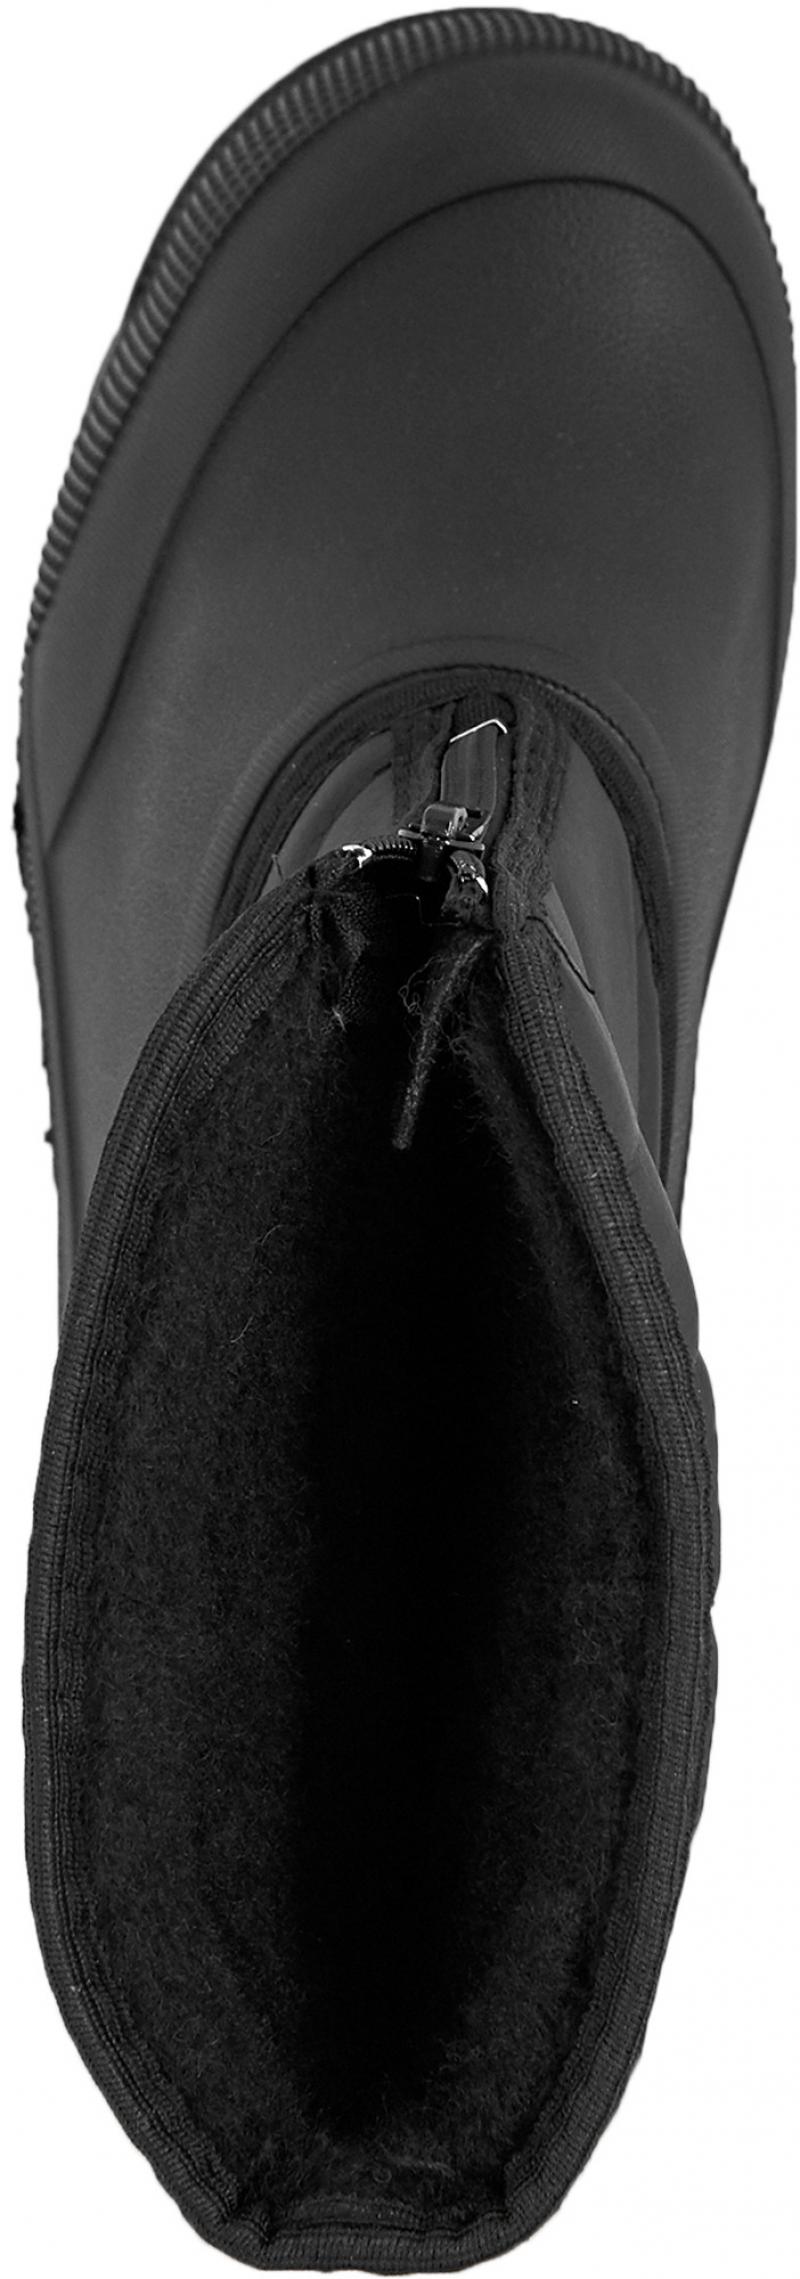 Сапоги мужские М-018 размер 42 цвет чёрный